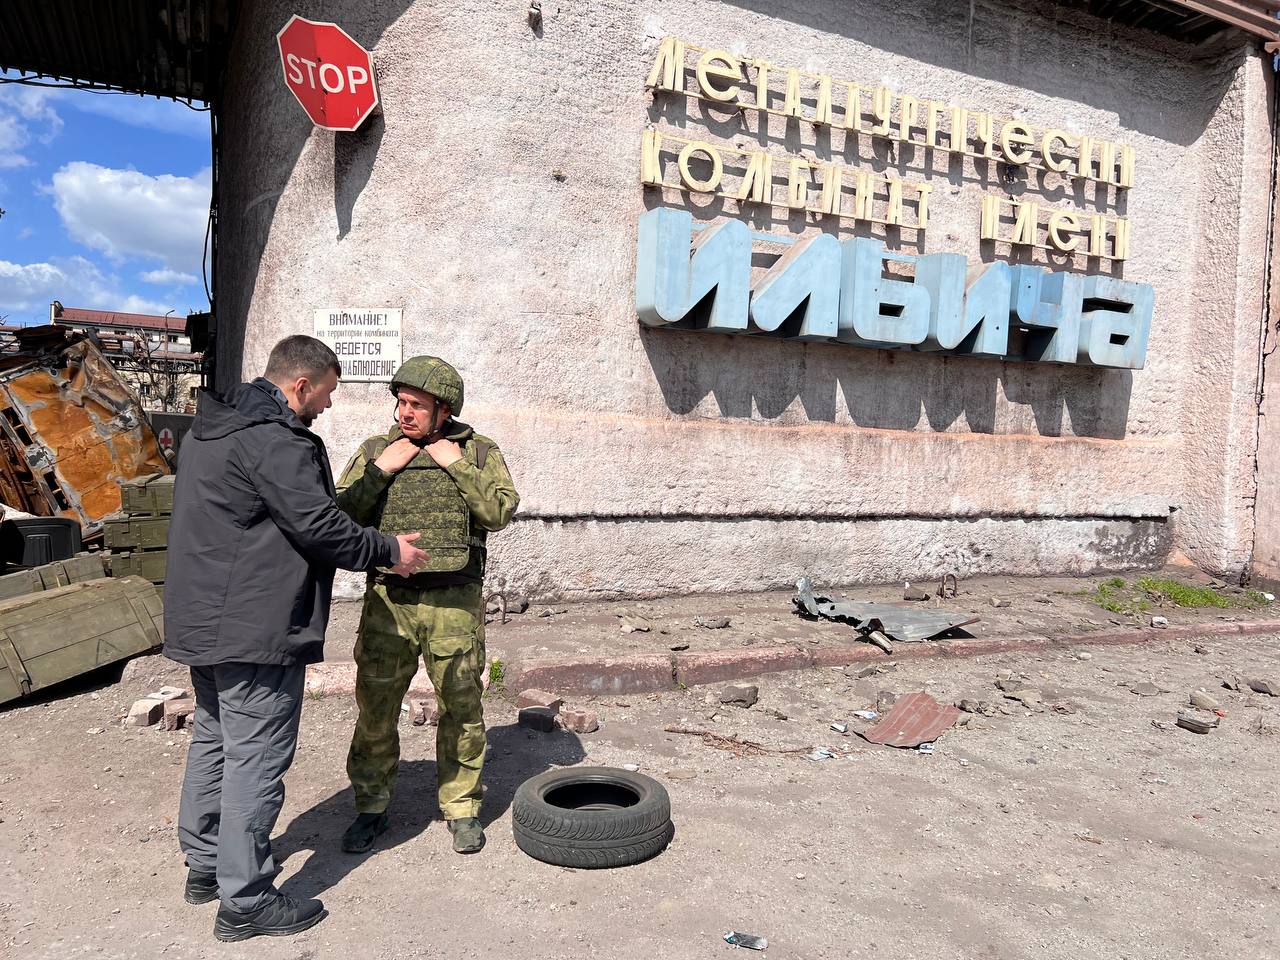 СМИ сообщили, что делал Владимир Соловьёв в Мариуполе и показали его фото в военной форме